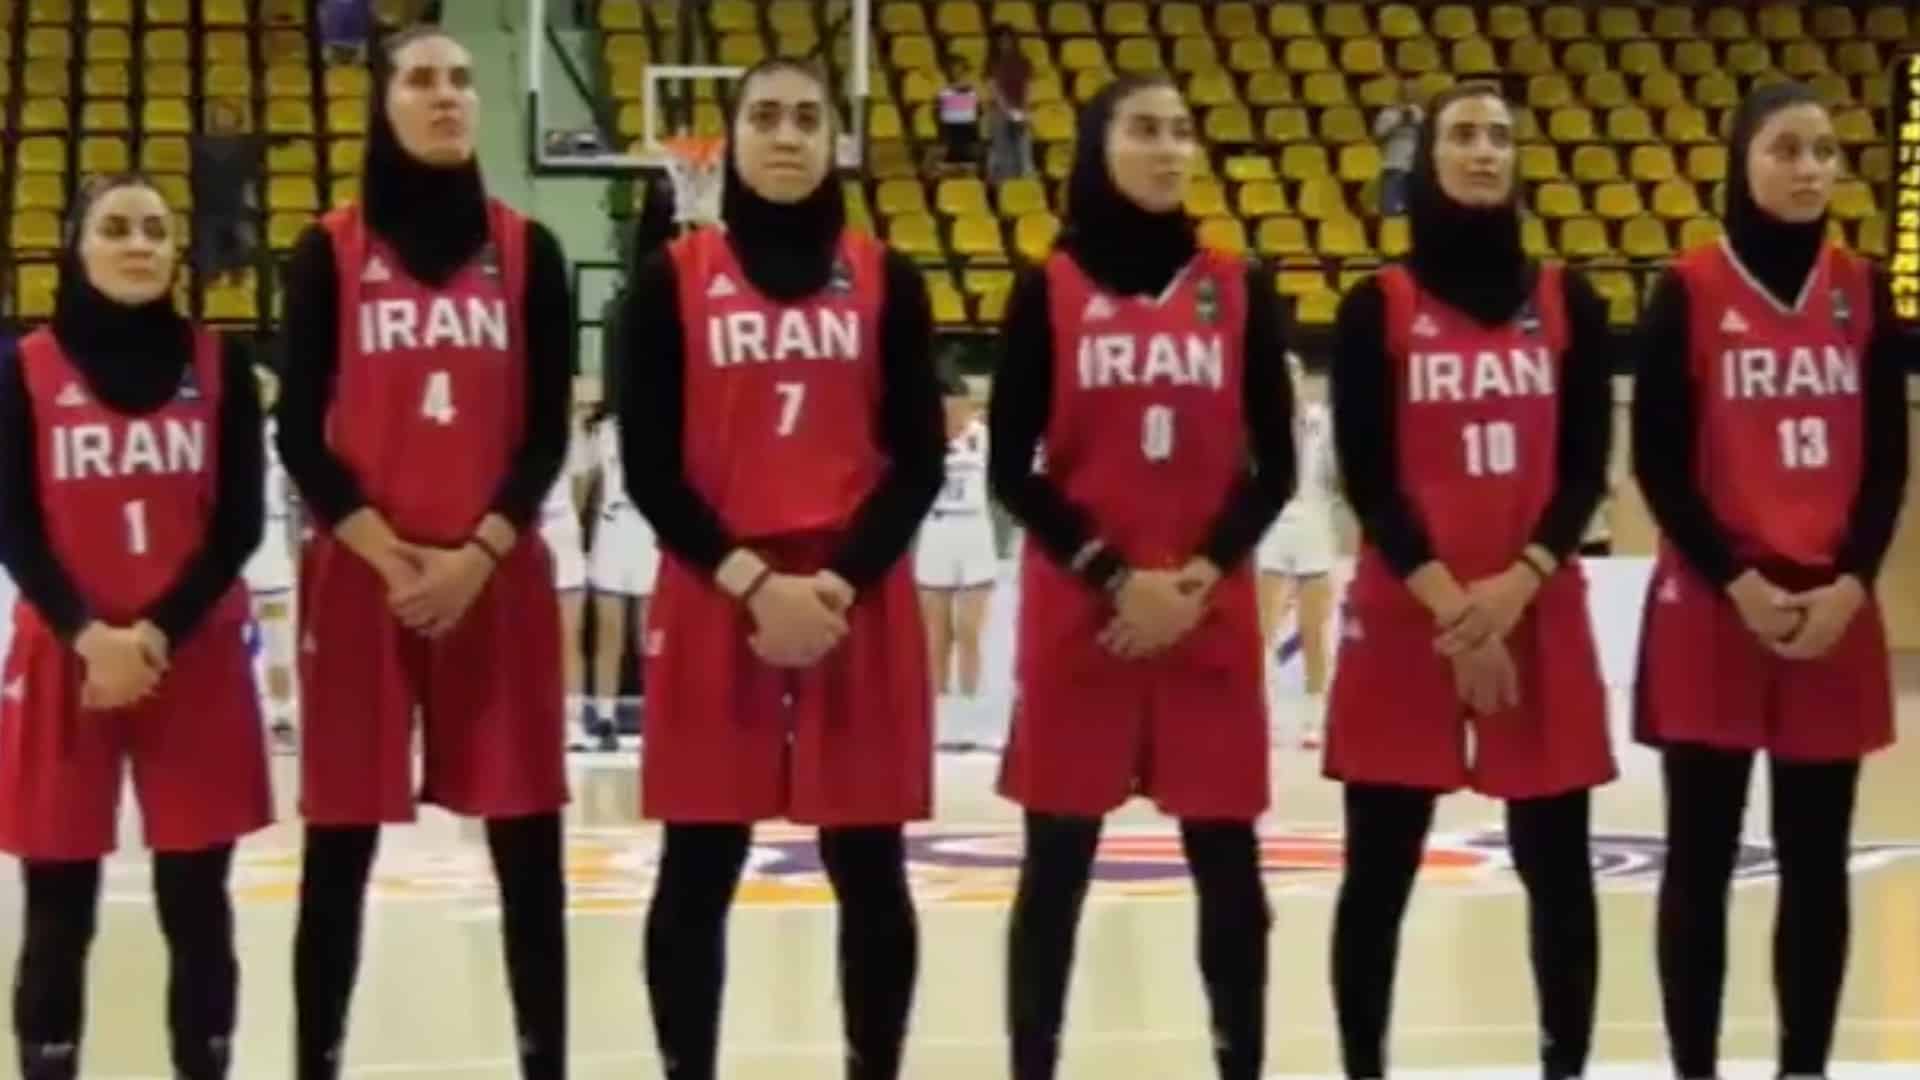 Acusan de traición a jugadoras de la selección iraní de baloncesto